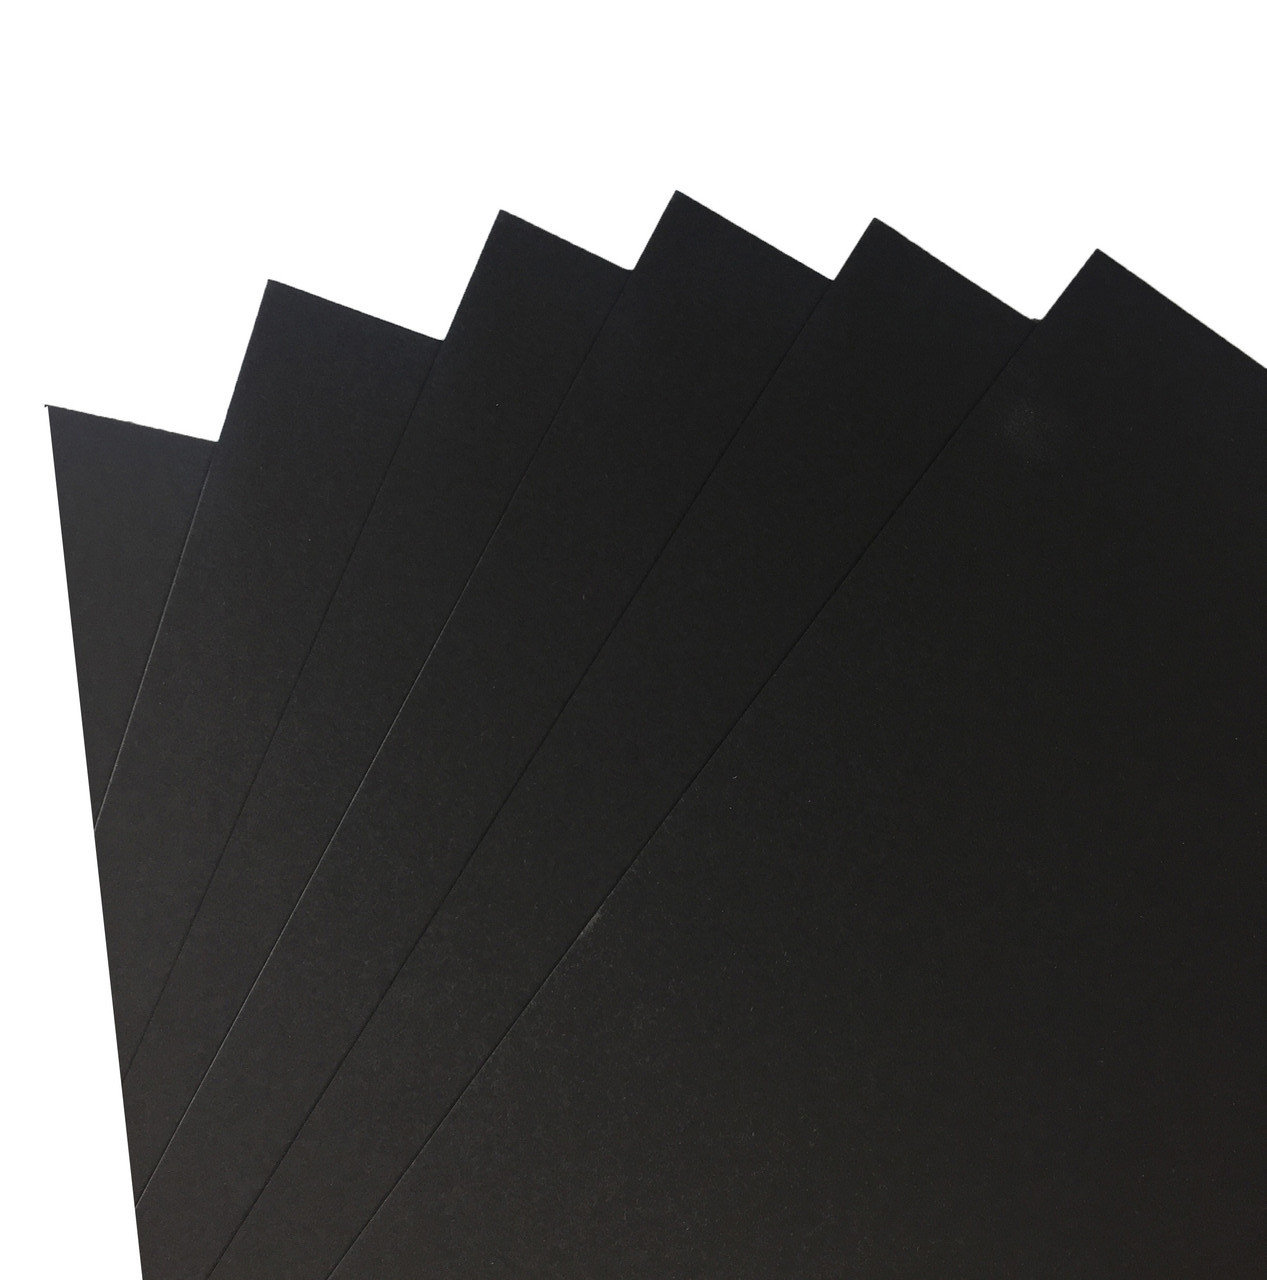 Бумага цветная Folia 50х70 см 300 г, черный бумага цветная folia а4 300 г